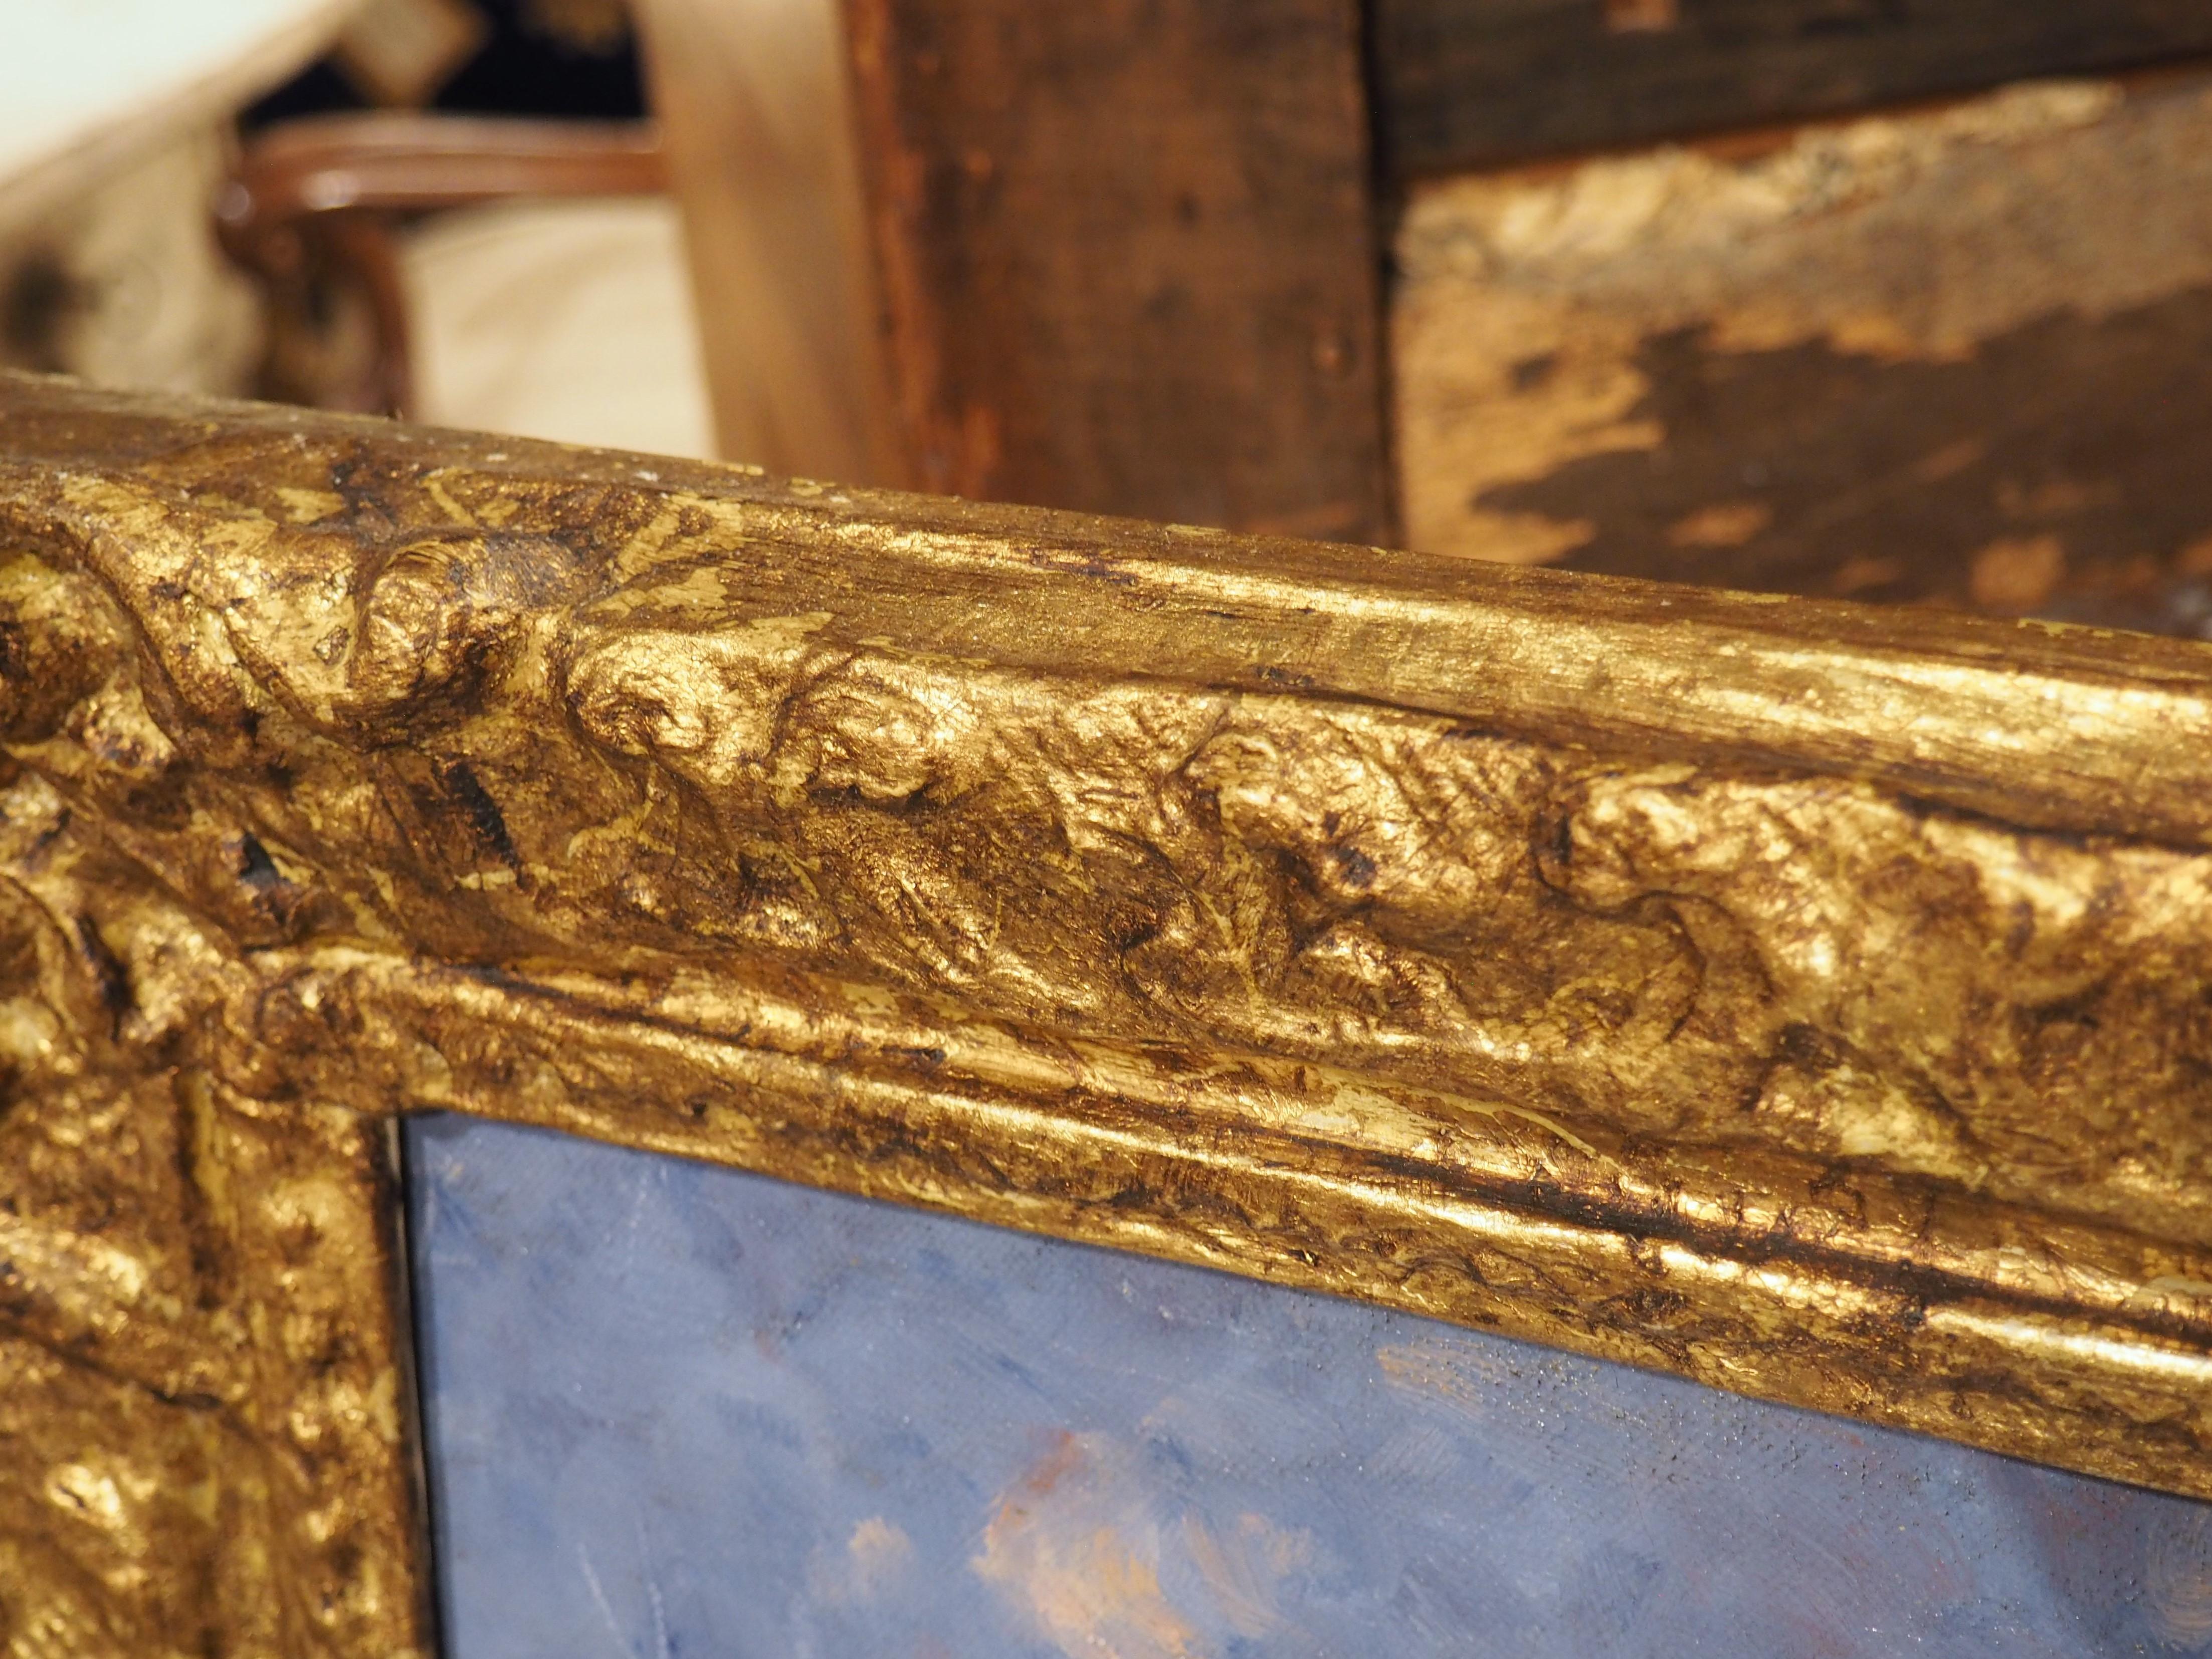 Représentant très fidèlement un coteau des Baux-de-Provence, en France, cette huile sur toile de Jules Felix Brien est entourée d'un cadre en papier mâché à la feuille d'or, orné de volutes et d'un fond à motifs de losanges. Les Baux sont considérés